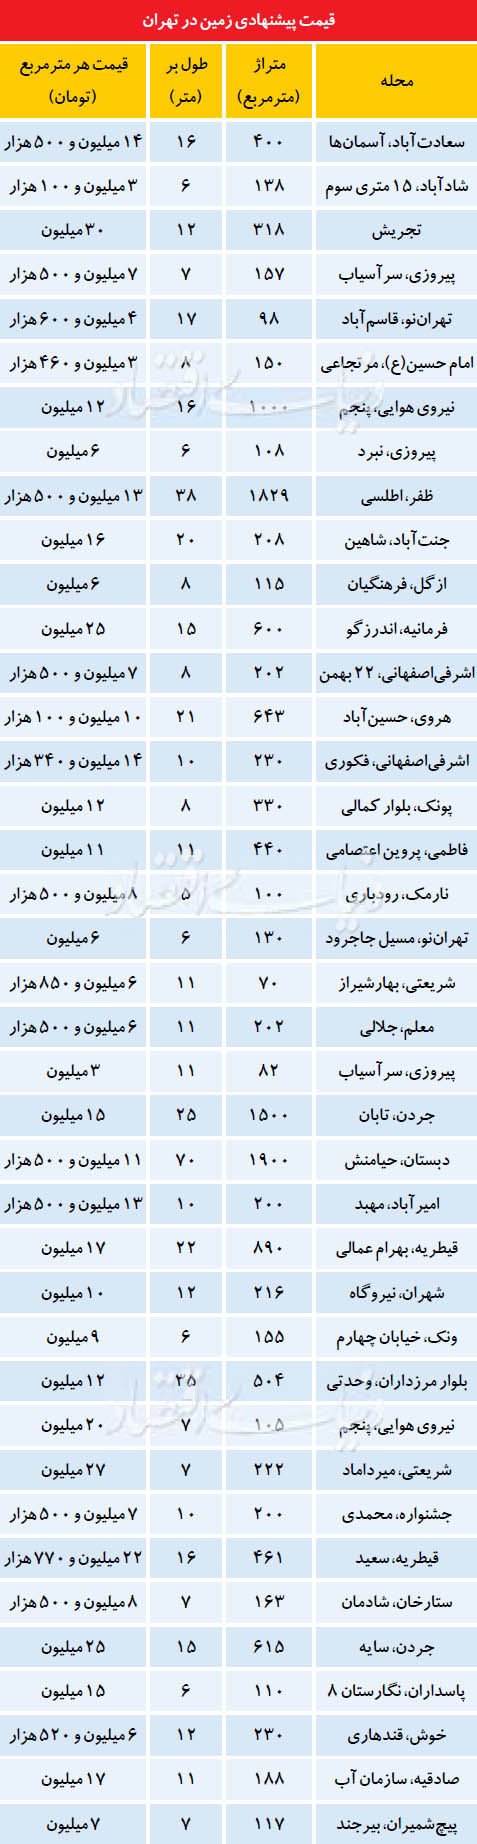 قیمت پیشنهادی زمین در تهران (+جدول)